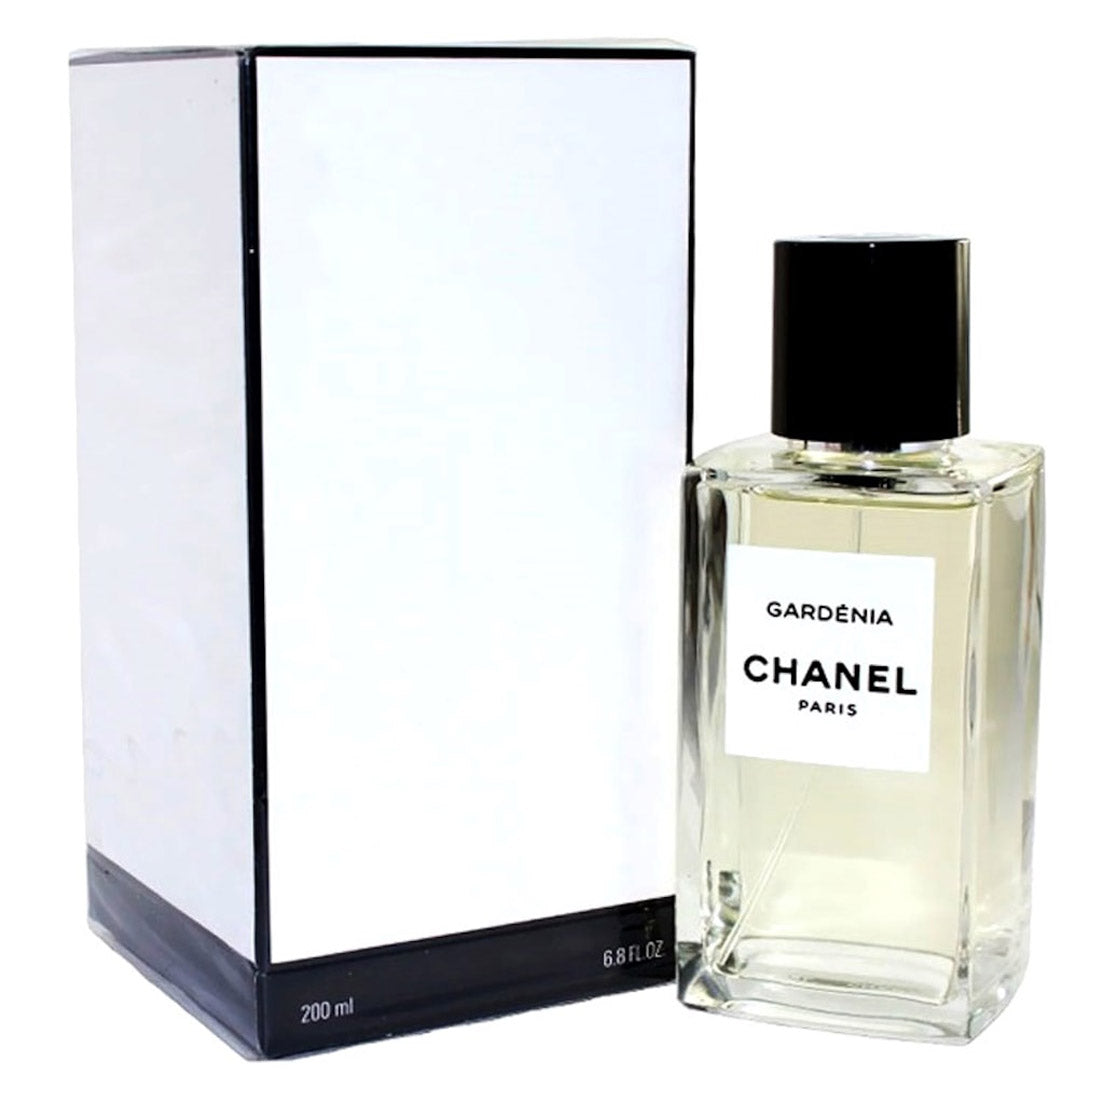 Chanel Paris Gardenia Les Exclusifs De Chanel Eau de Parfum